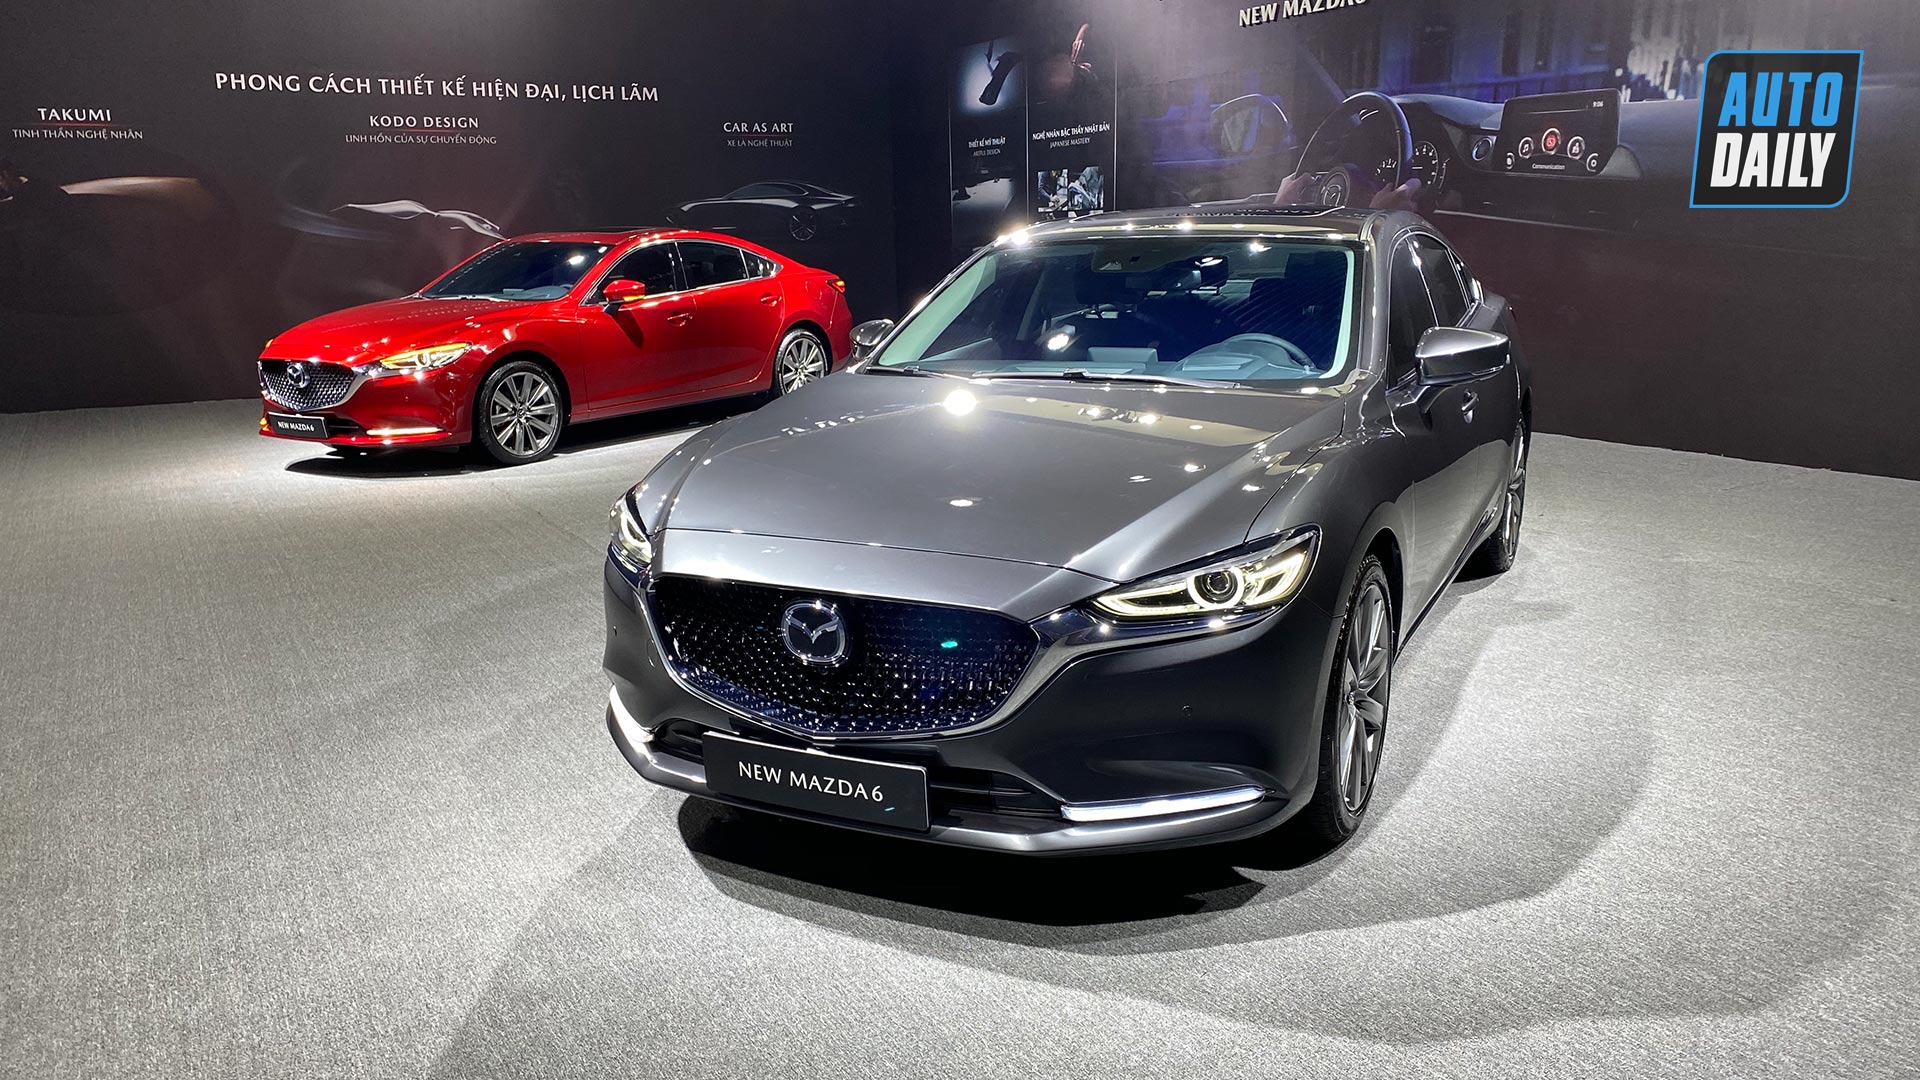 Phiên bản cao cấp nhất của Mazda6 2020 được nâng cấp những gì